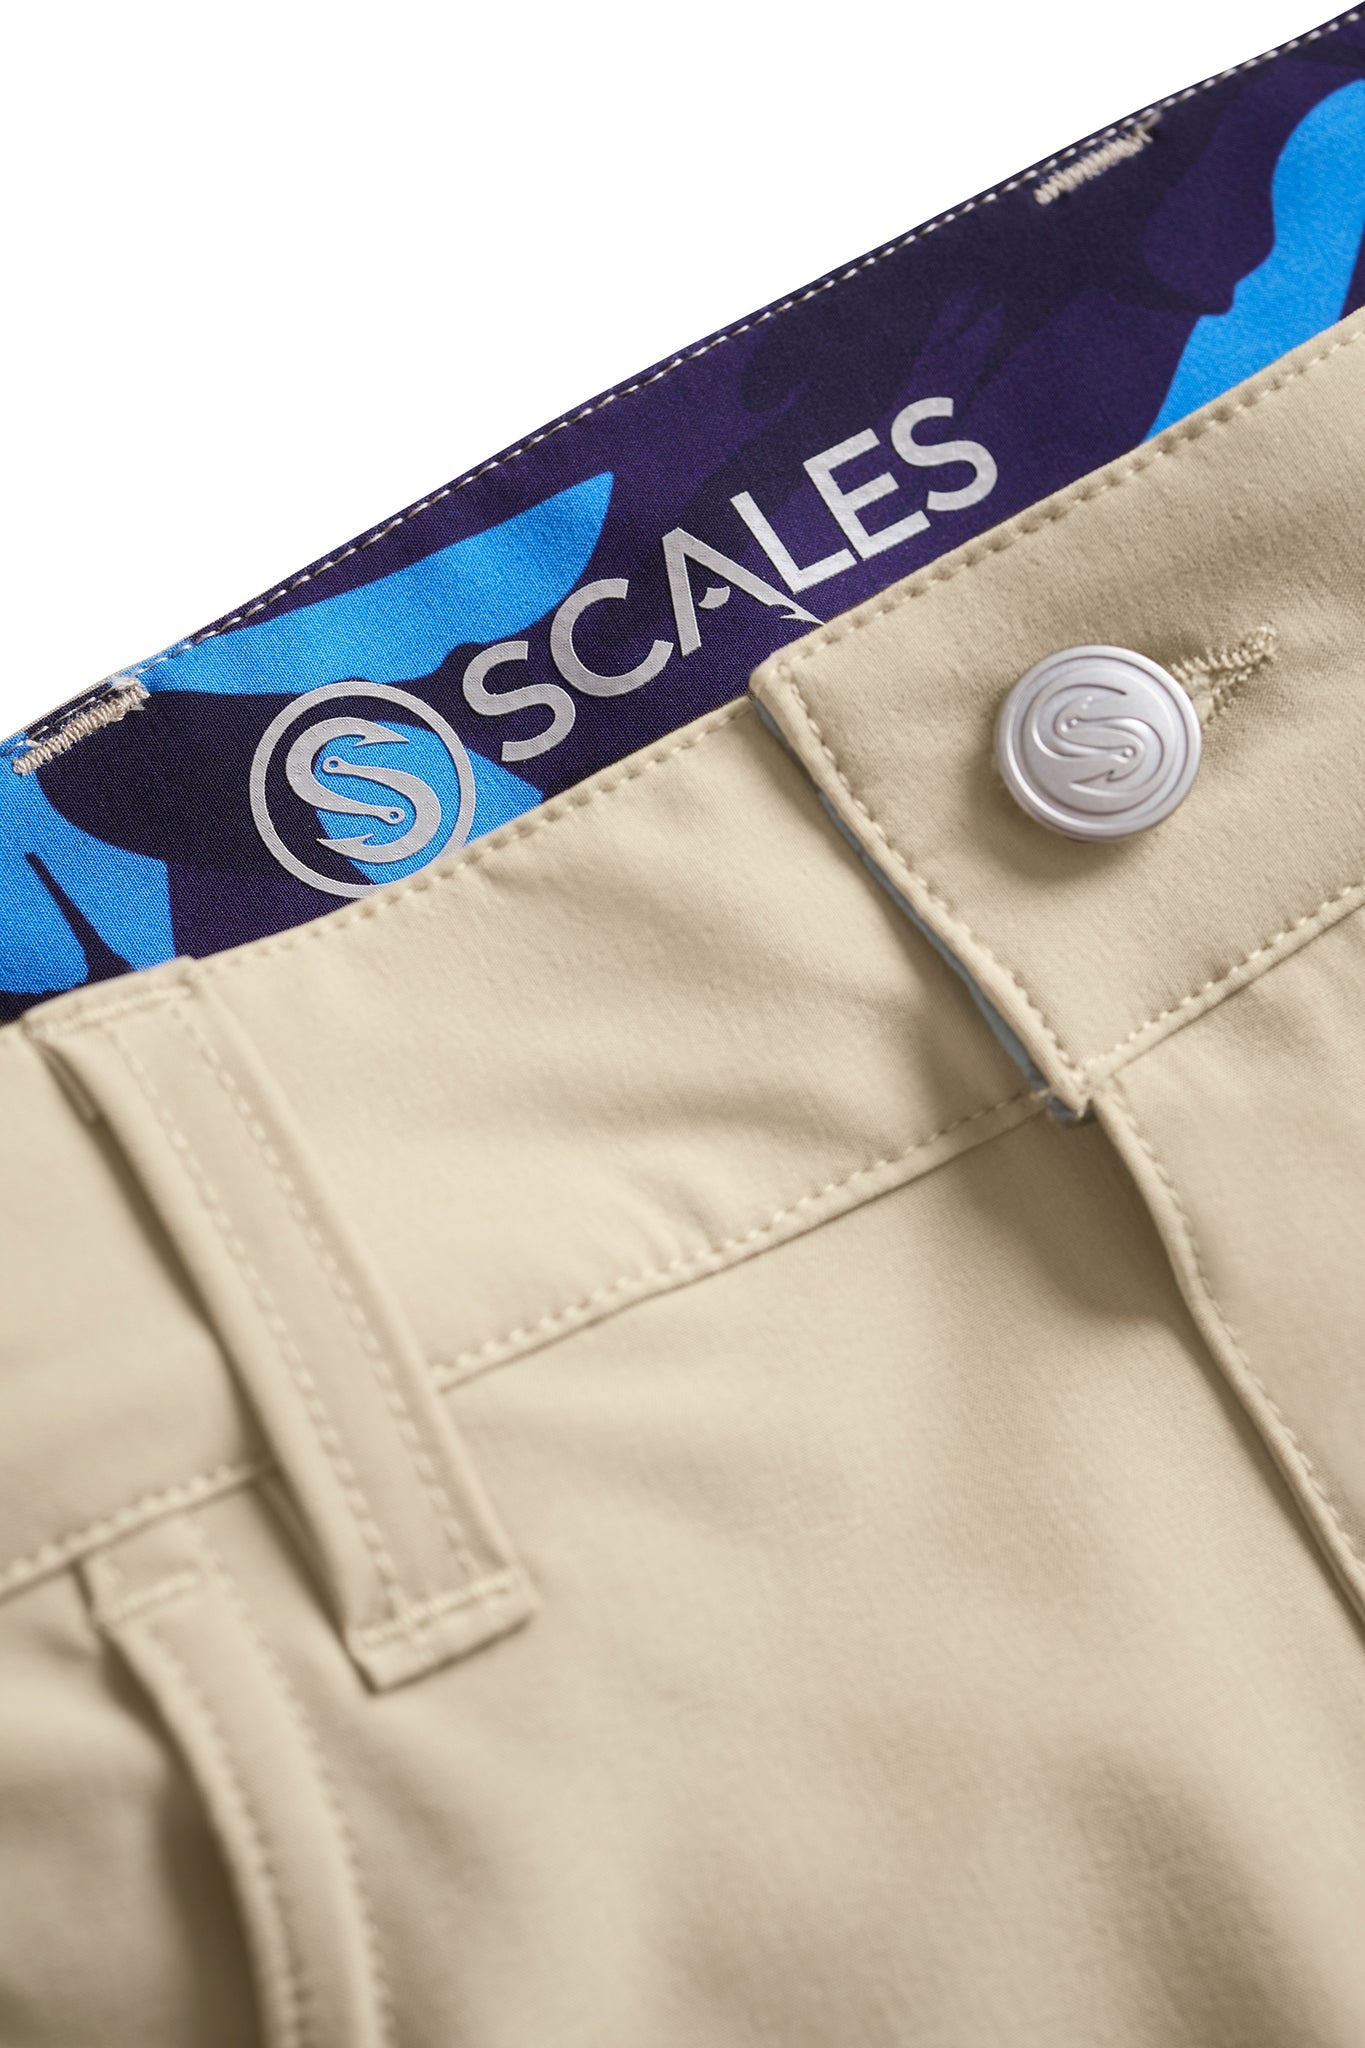 All Tides Pants - 5 Pockets (Core Blue Colors) – Scalesgear.com